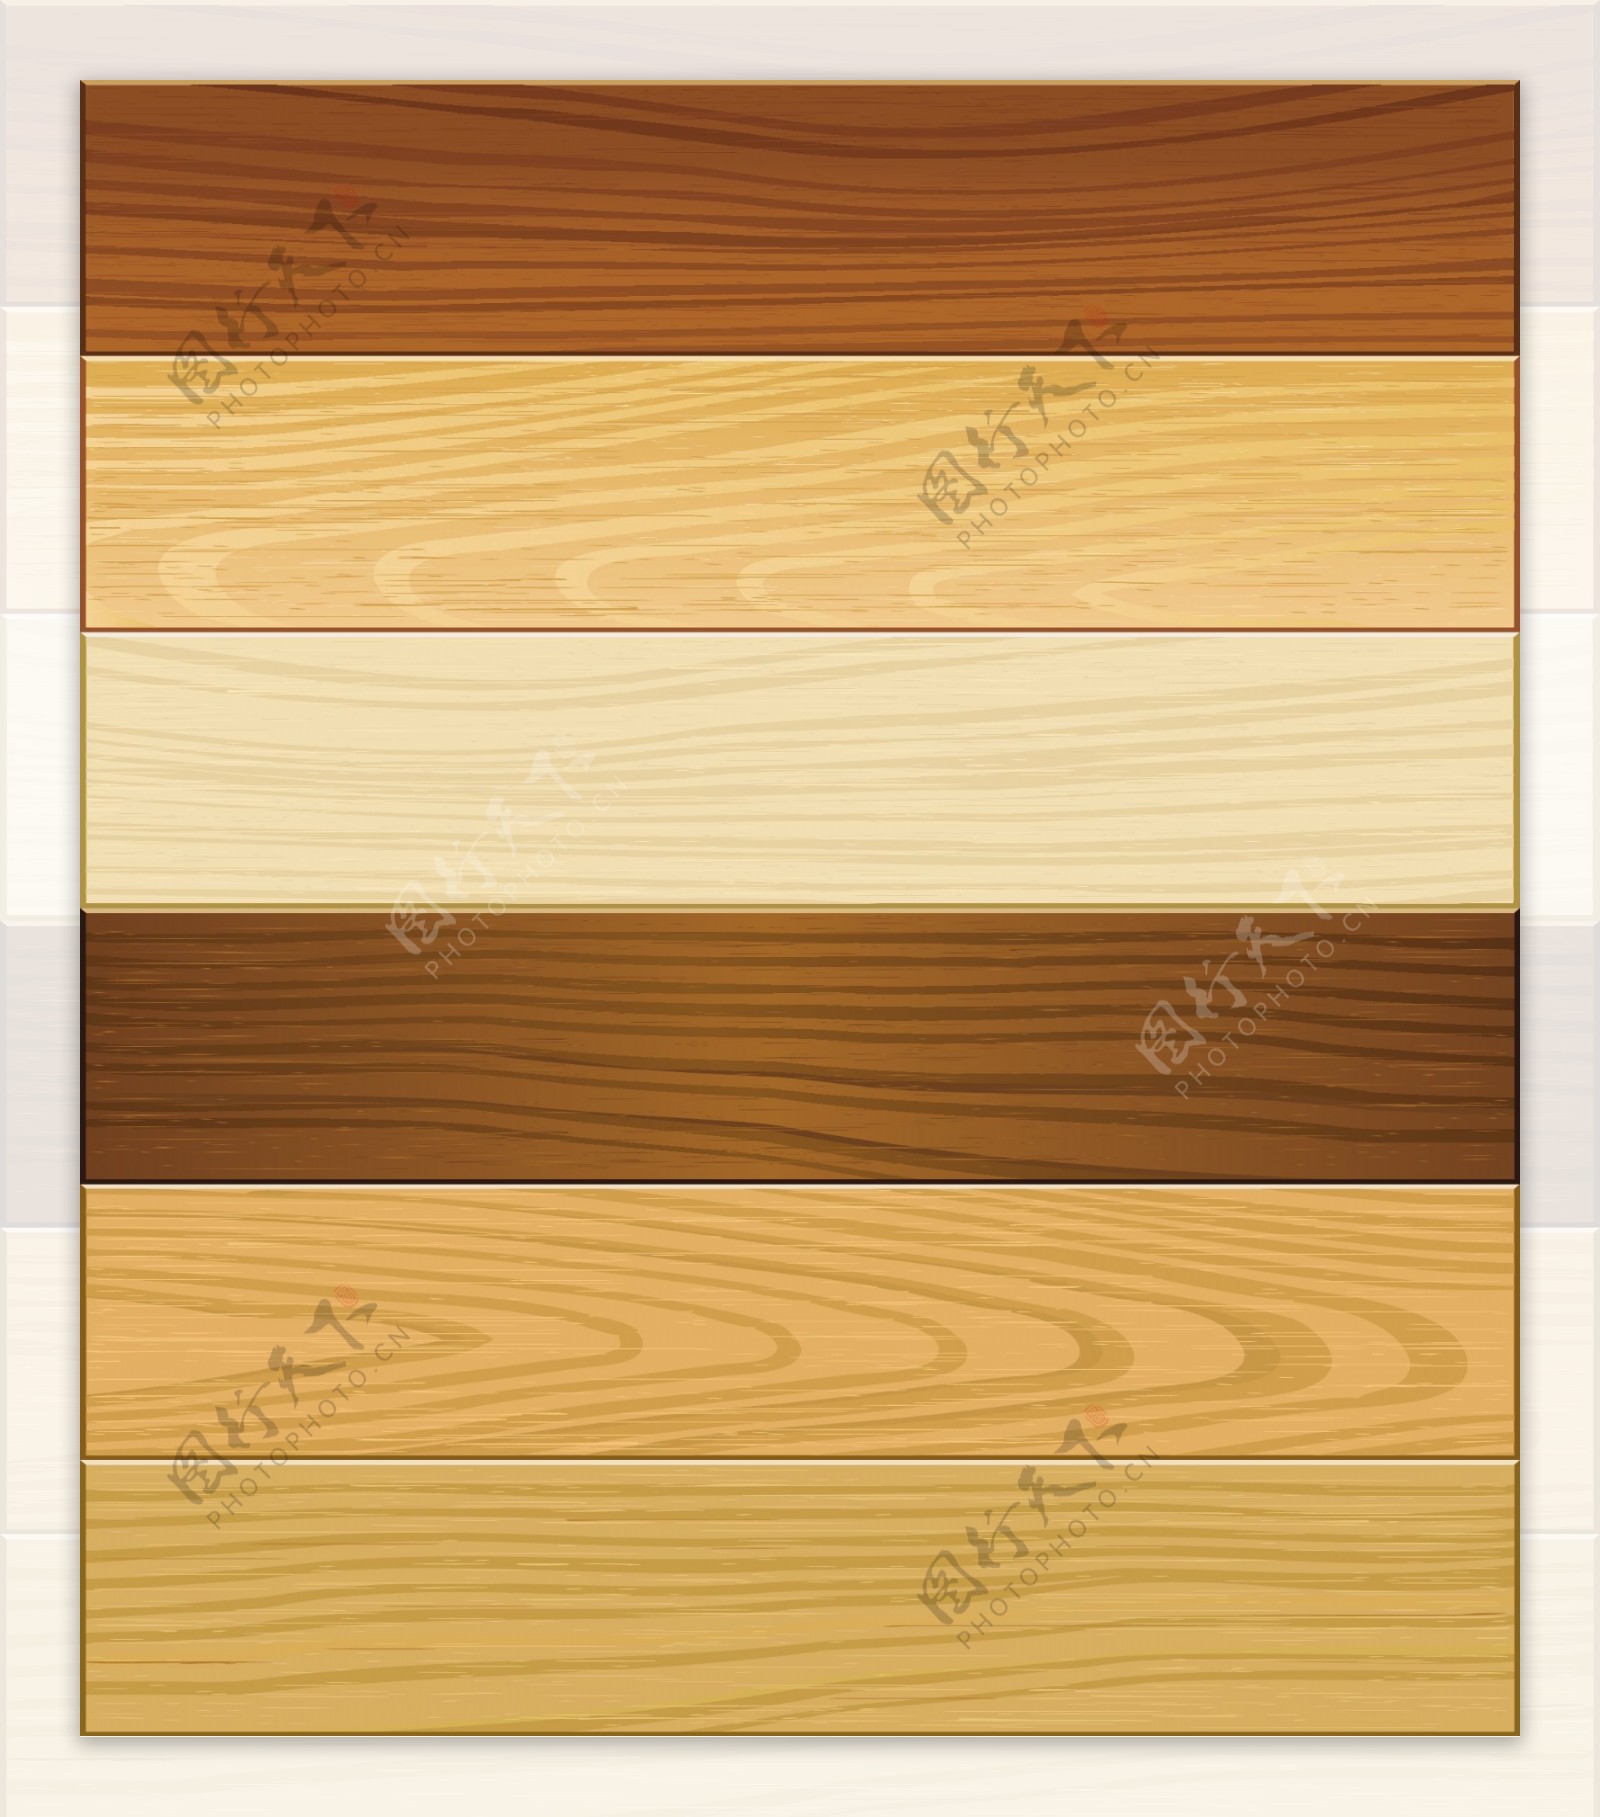 木纹木板木地板矢量图片